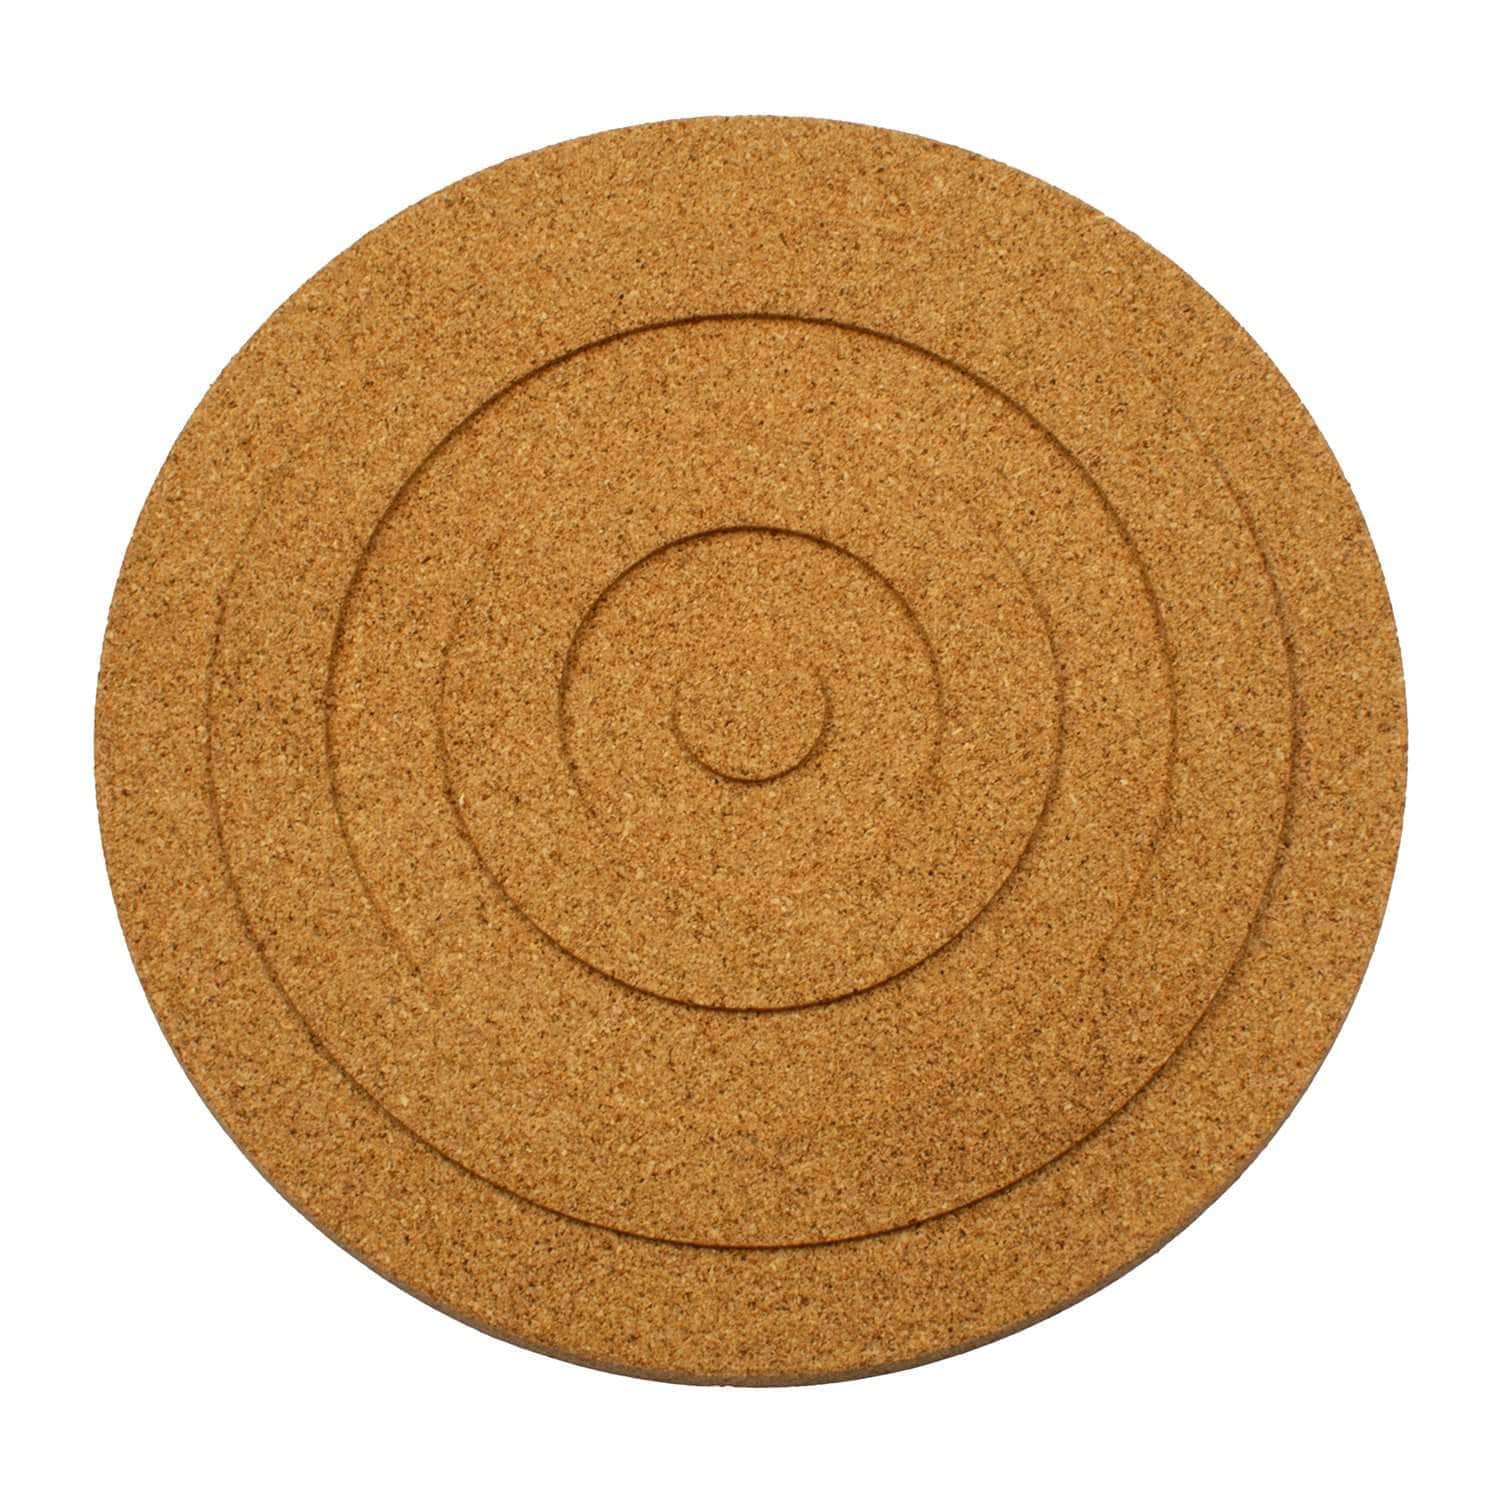 Natural cork circular trivet